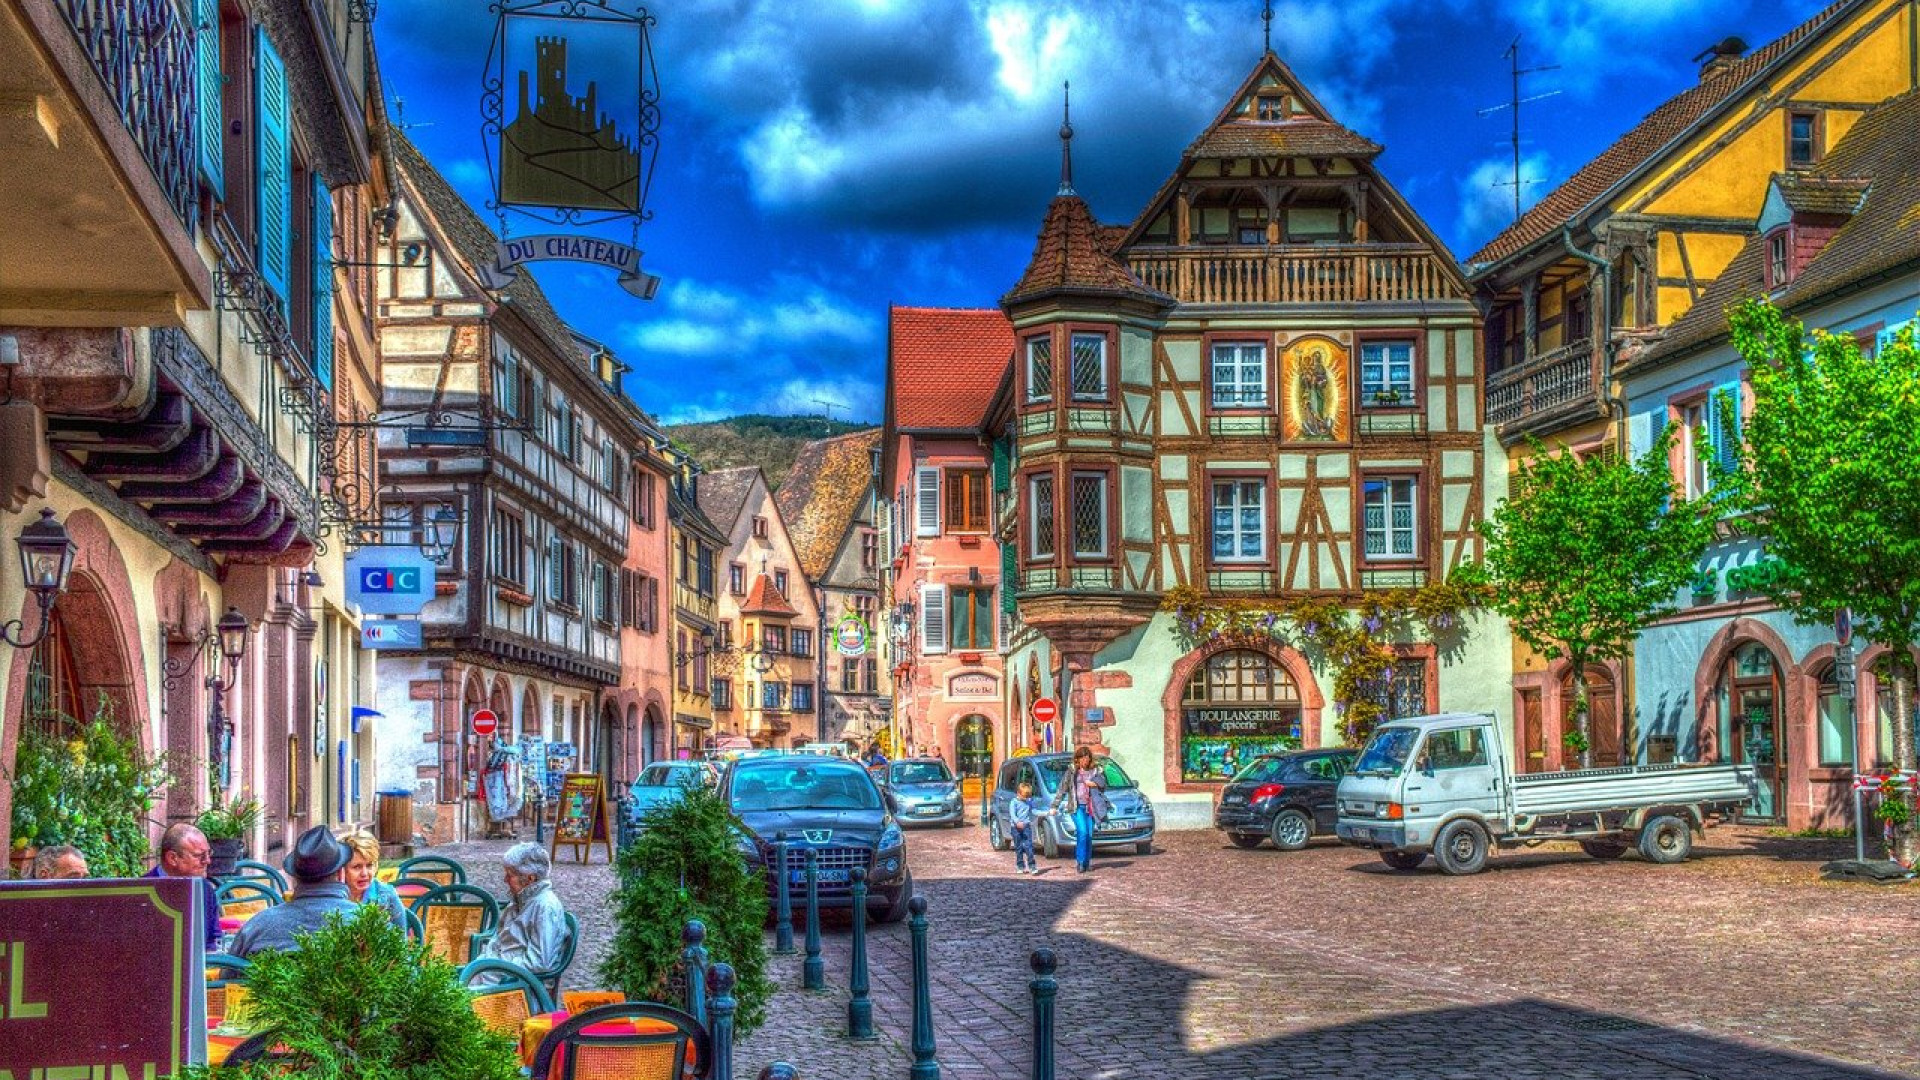 Investissement immobilier en Alsace : trouvez votre Joyau Caché…